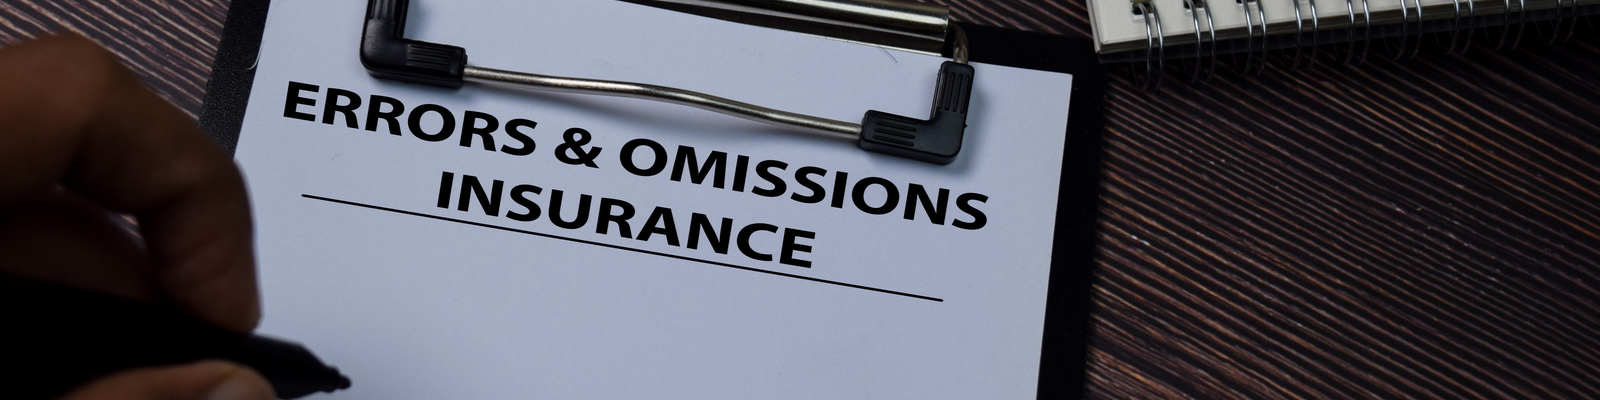 Errors & Omissions Insurance in Massachusetts | Garrity Insurance ...